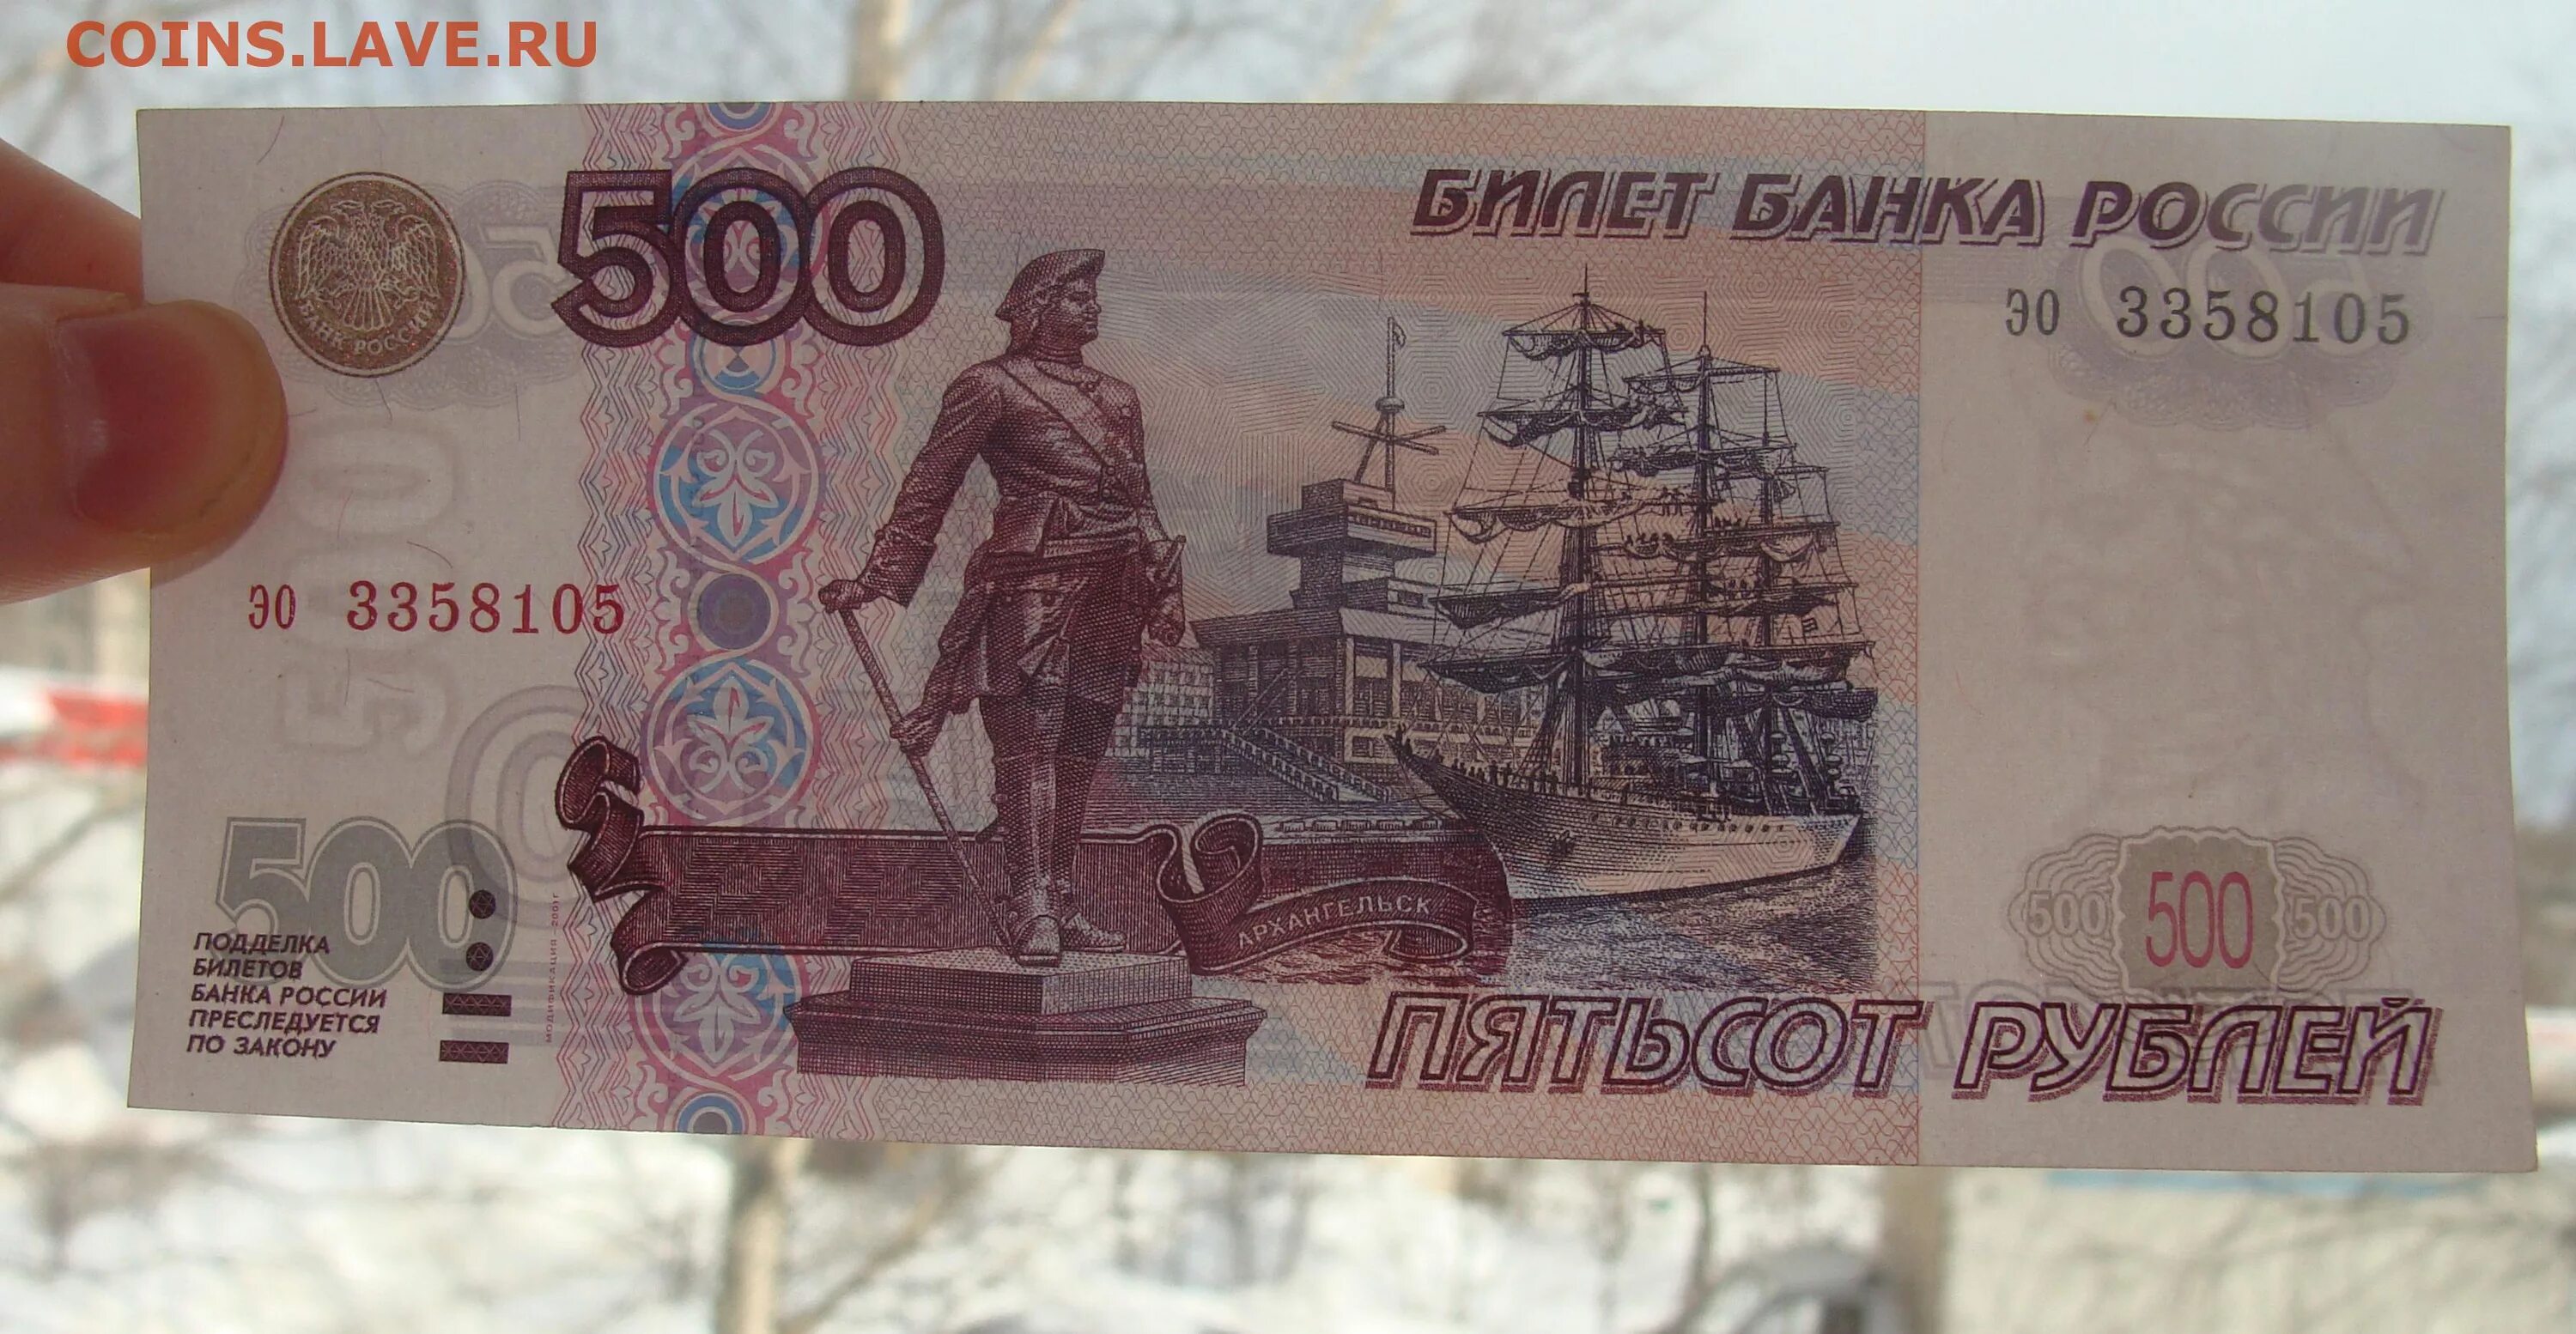 500 Рублей фальшивка и оригинал. Как отличить 500